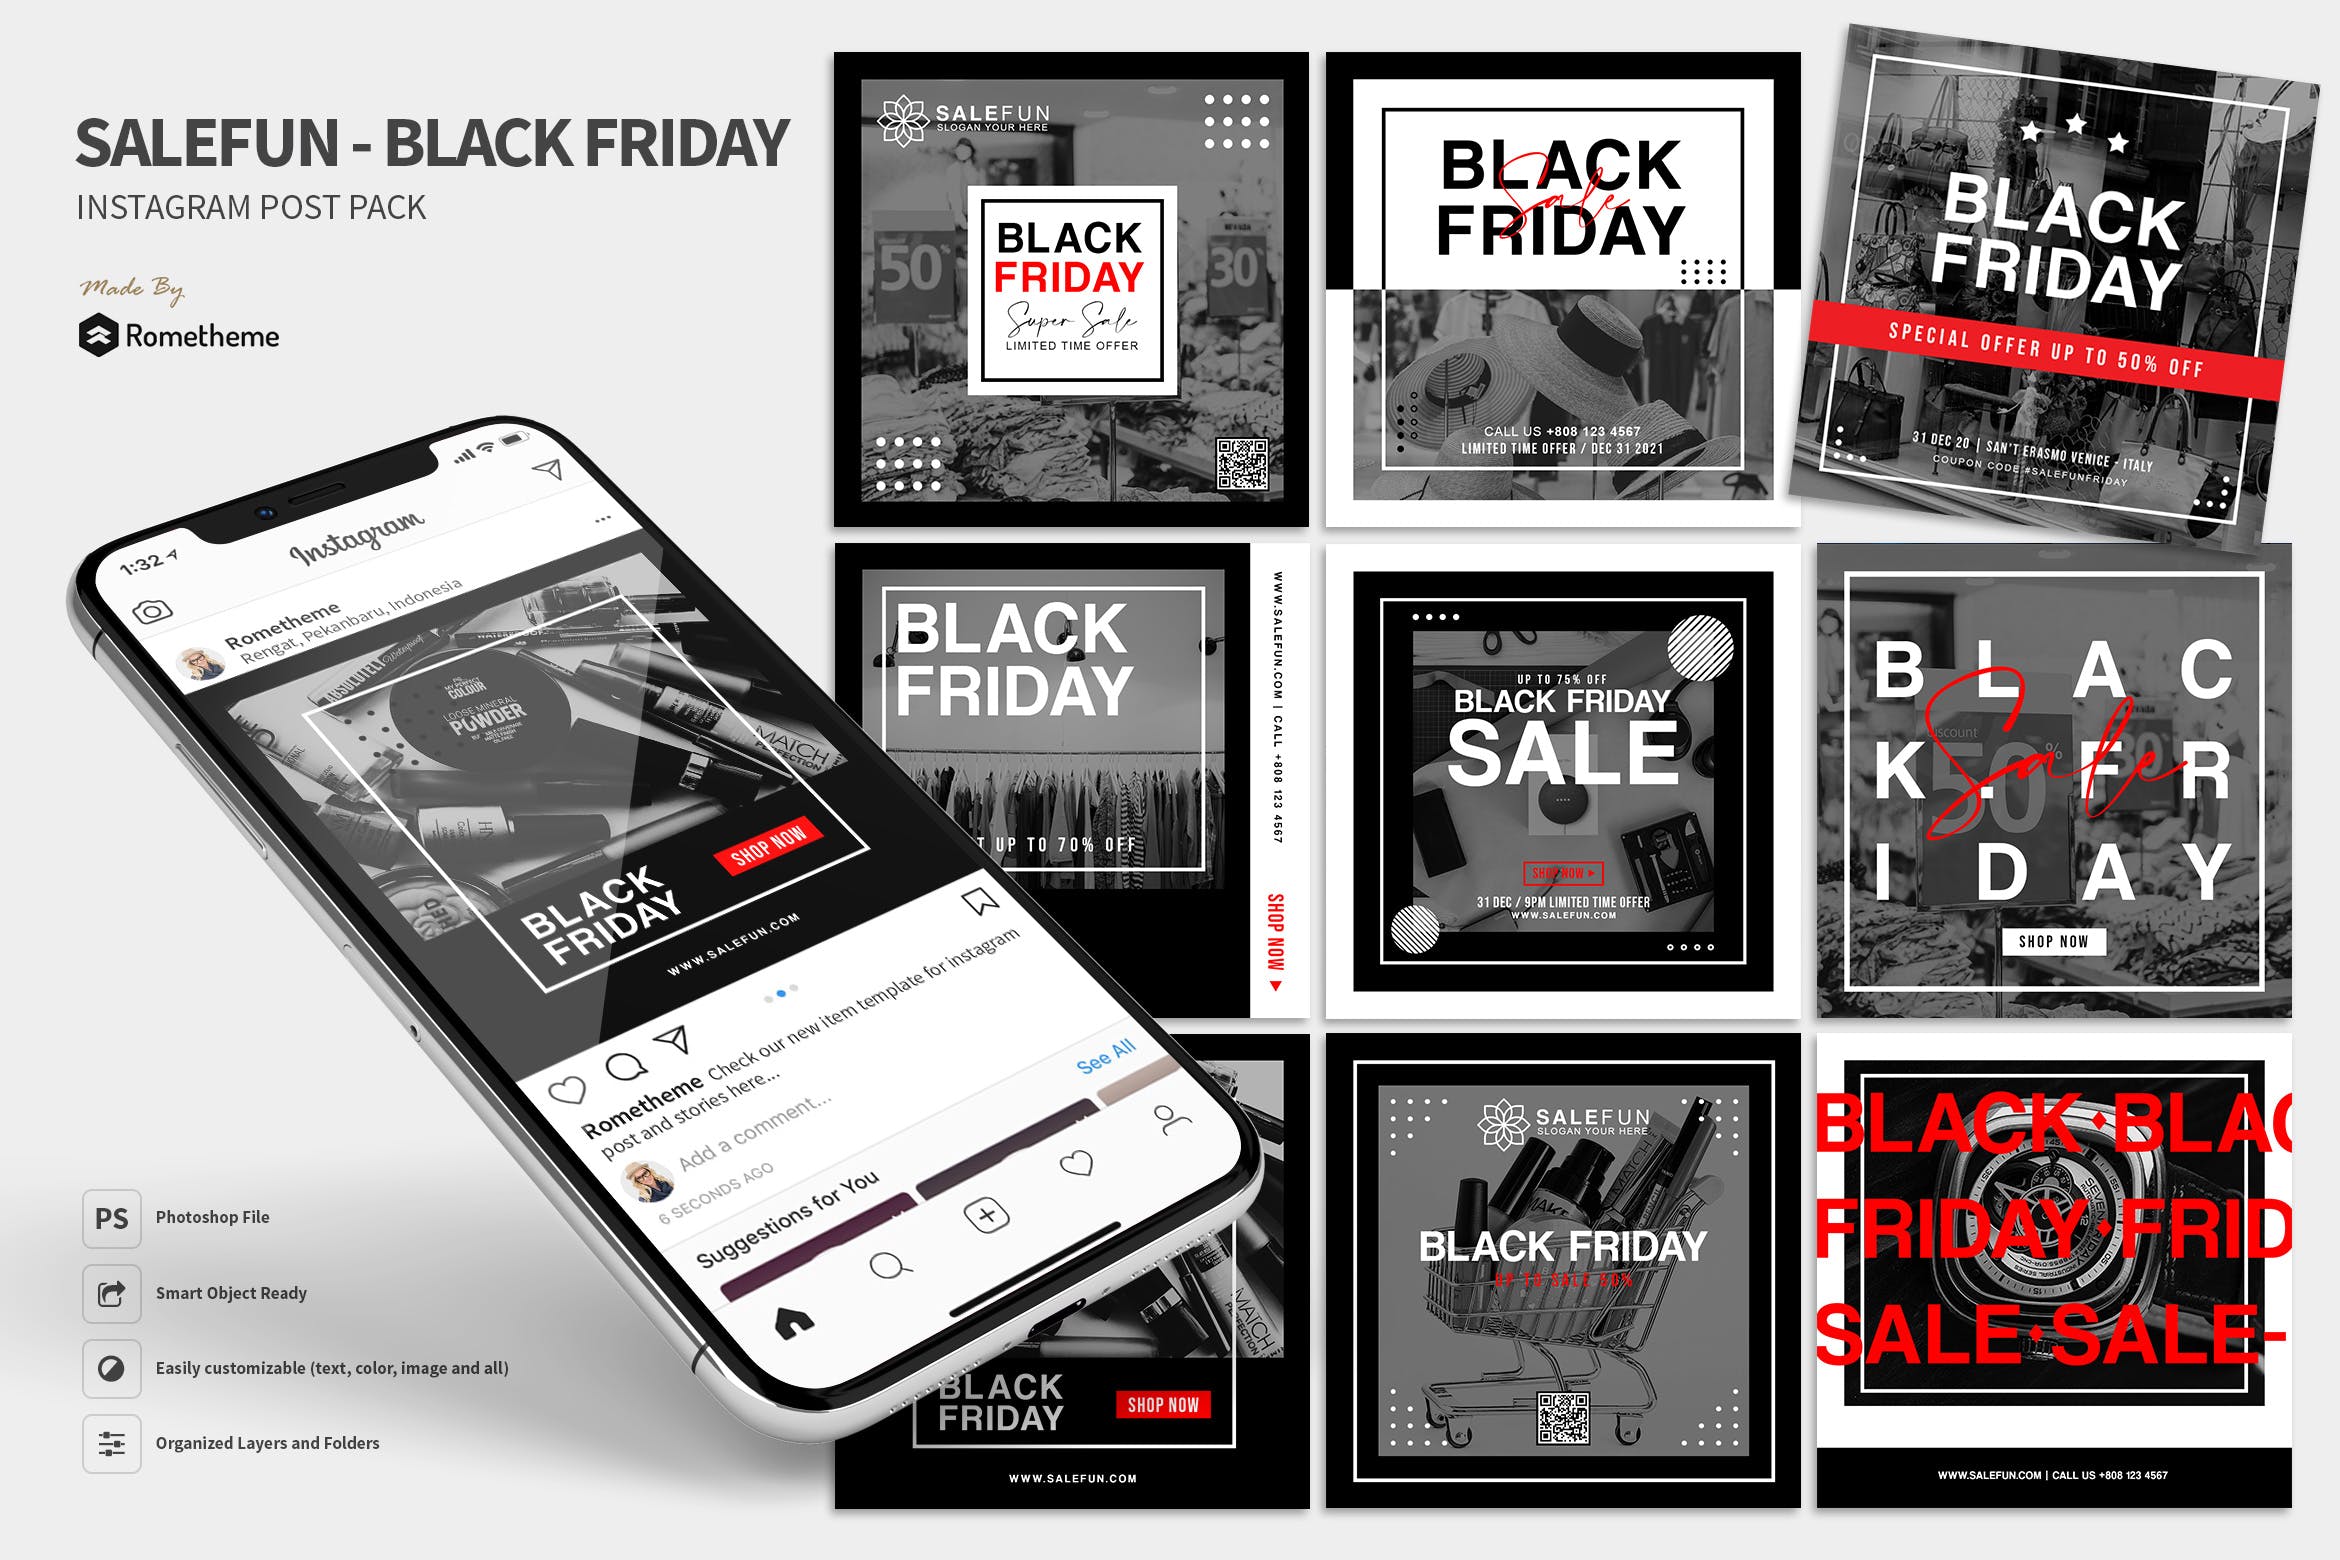 黑色星期五促销活动广告Instagram贴图设计模板第一素材精选 Salefun – Black Friday Promotion Instagram Post HR插图